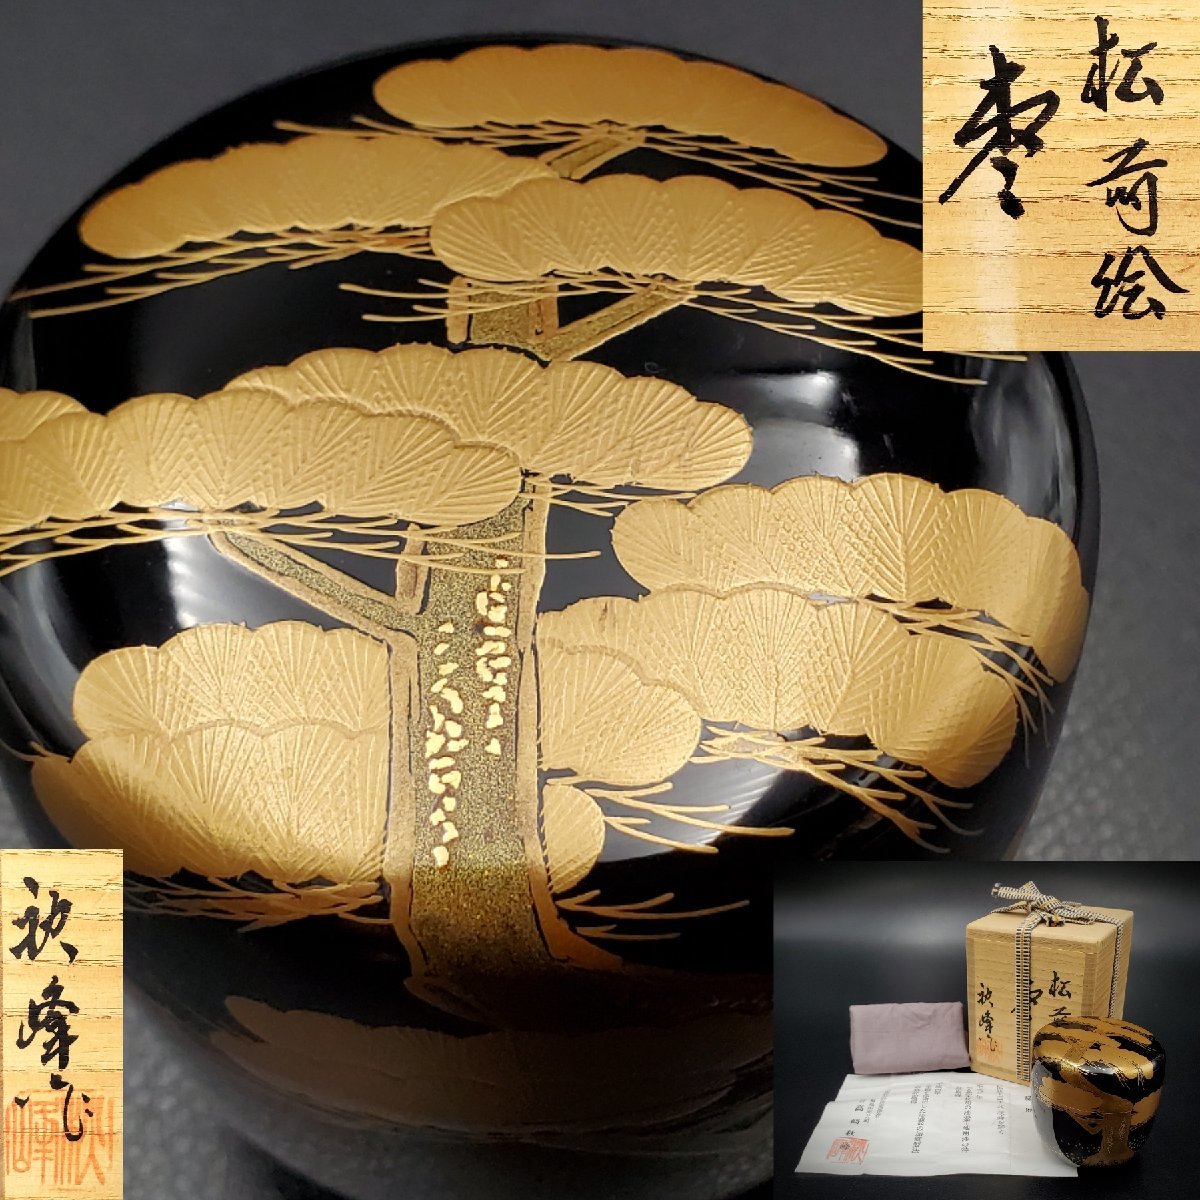 [. магазин ] колесо остров краска 2 поколения Takasaki осень . чёрный краска сосна лакировка чайница 6.5cm чайная посуда натуральное дерево лаковый покрытие лакированные изделия вместе коробка 